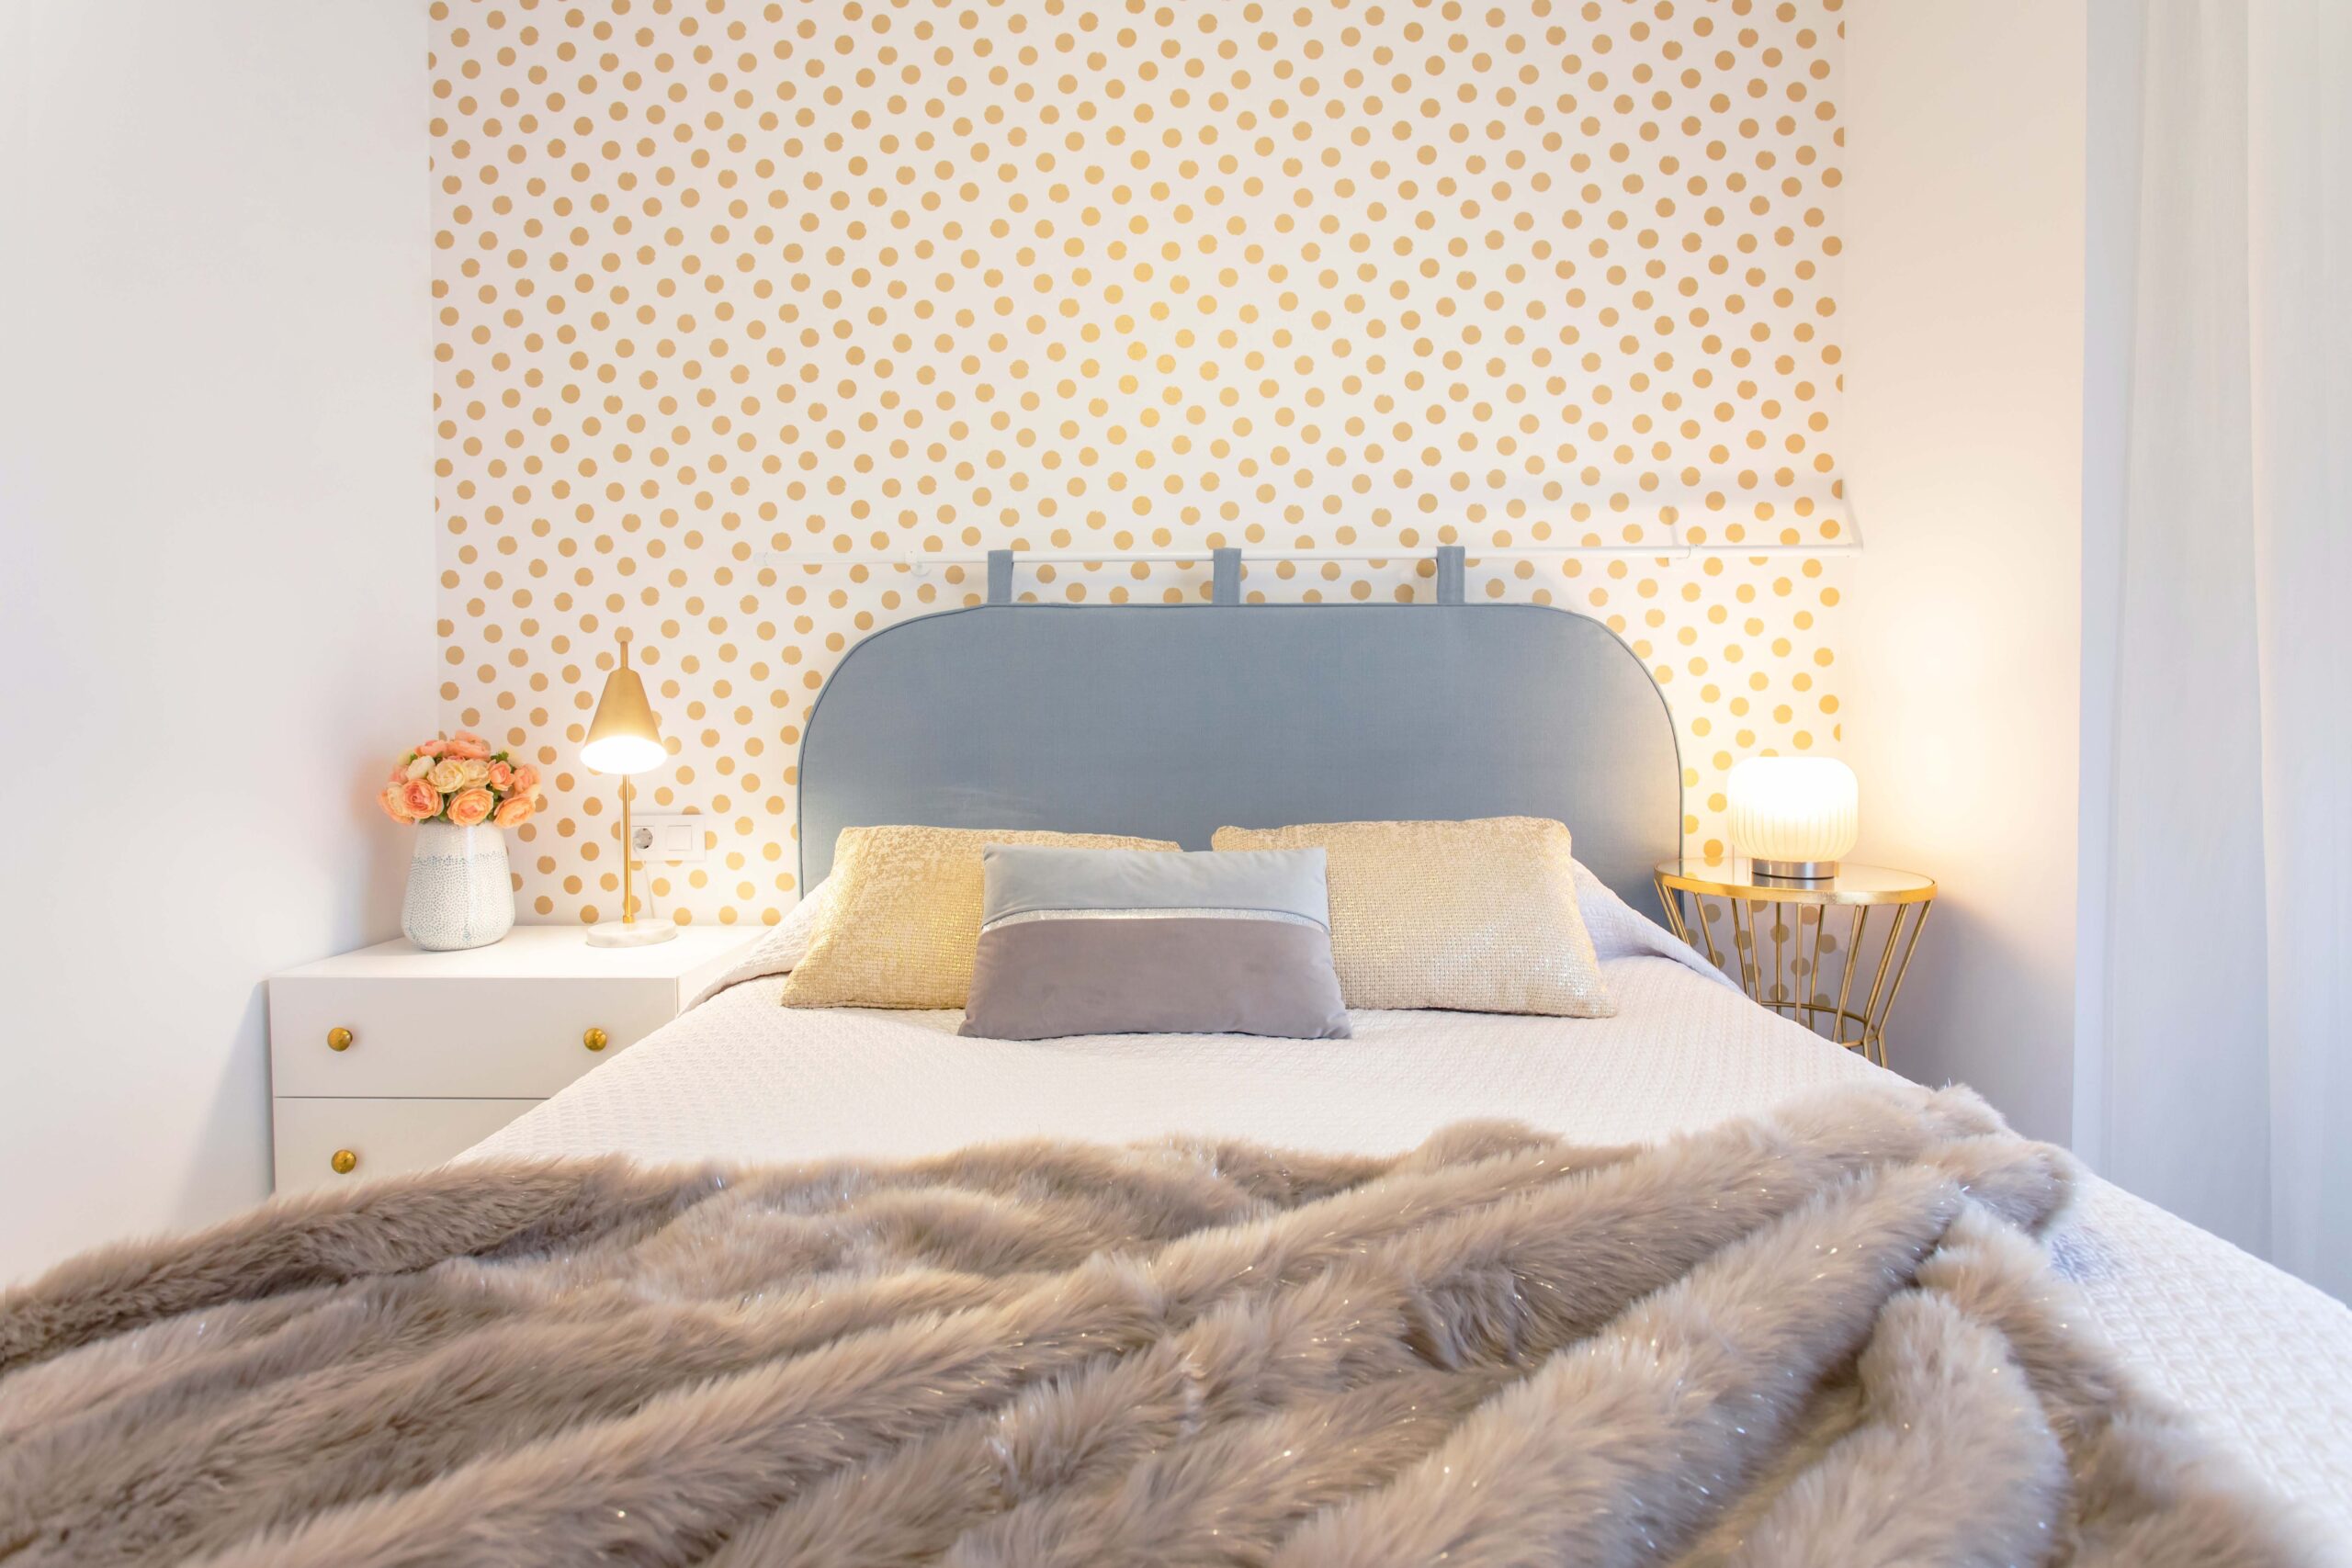 Dormitorio principal con papel decorativo de lunares dorado dando protagonismo al cabezal estilo hotel